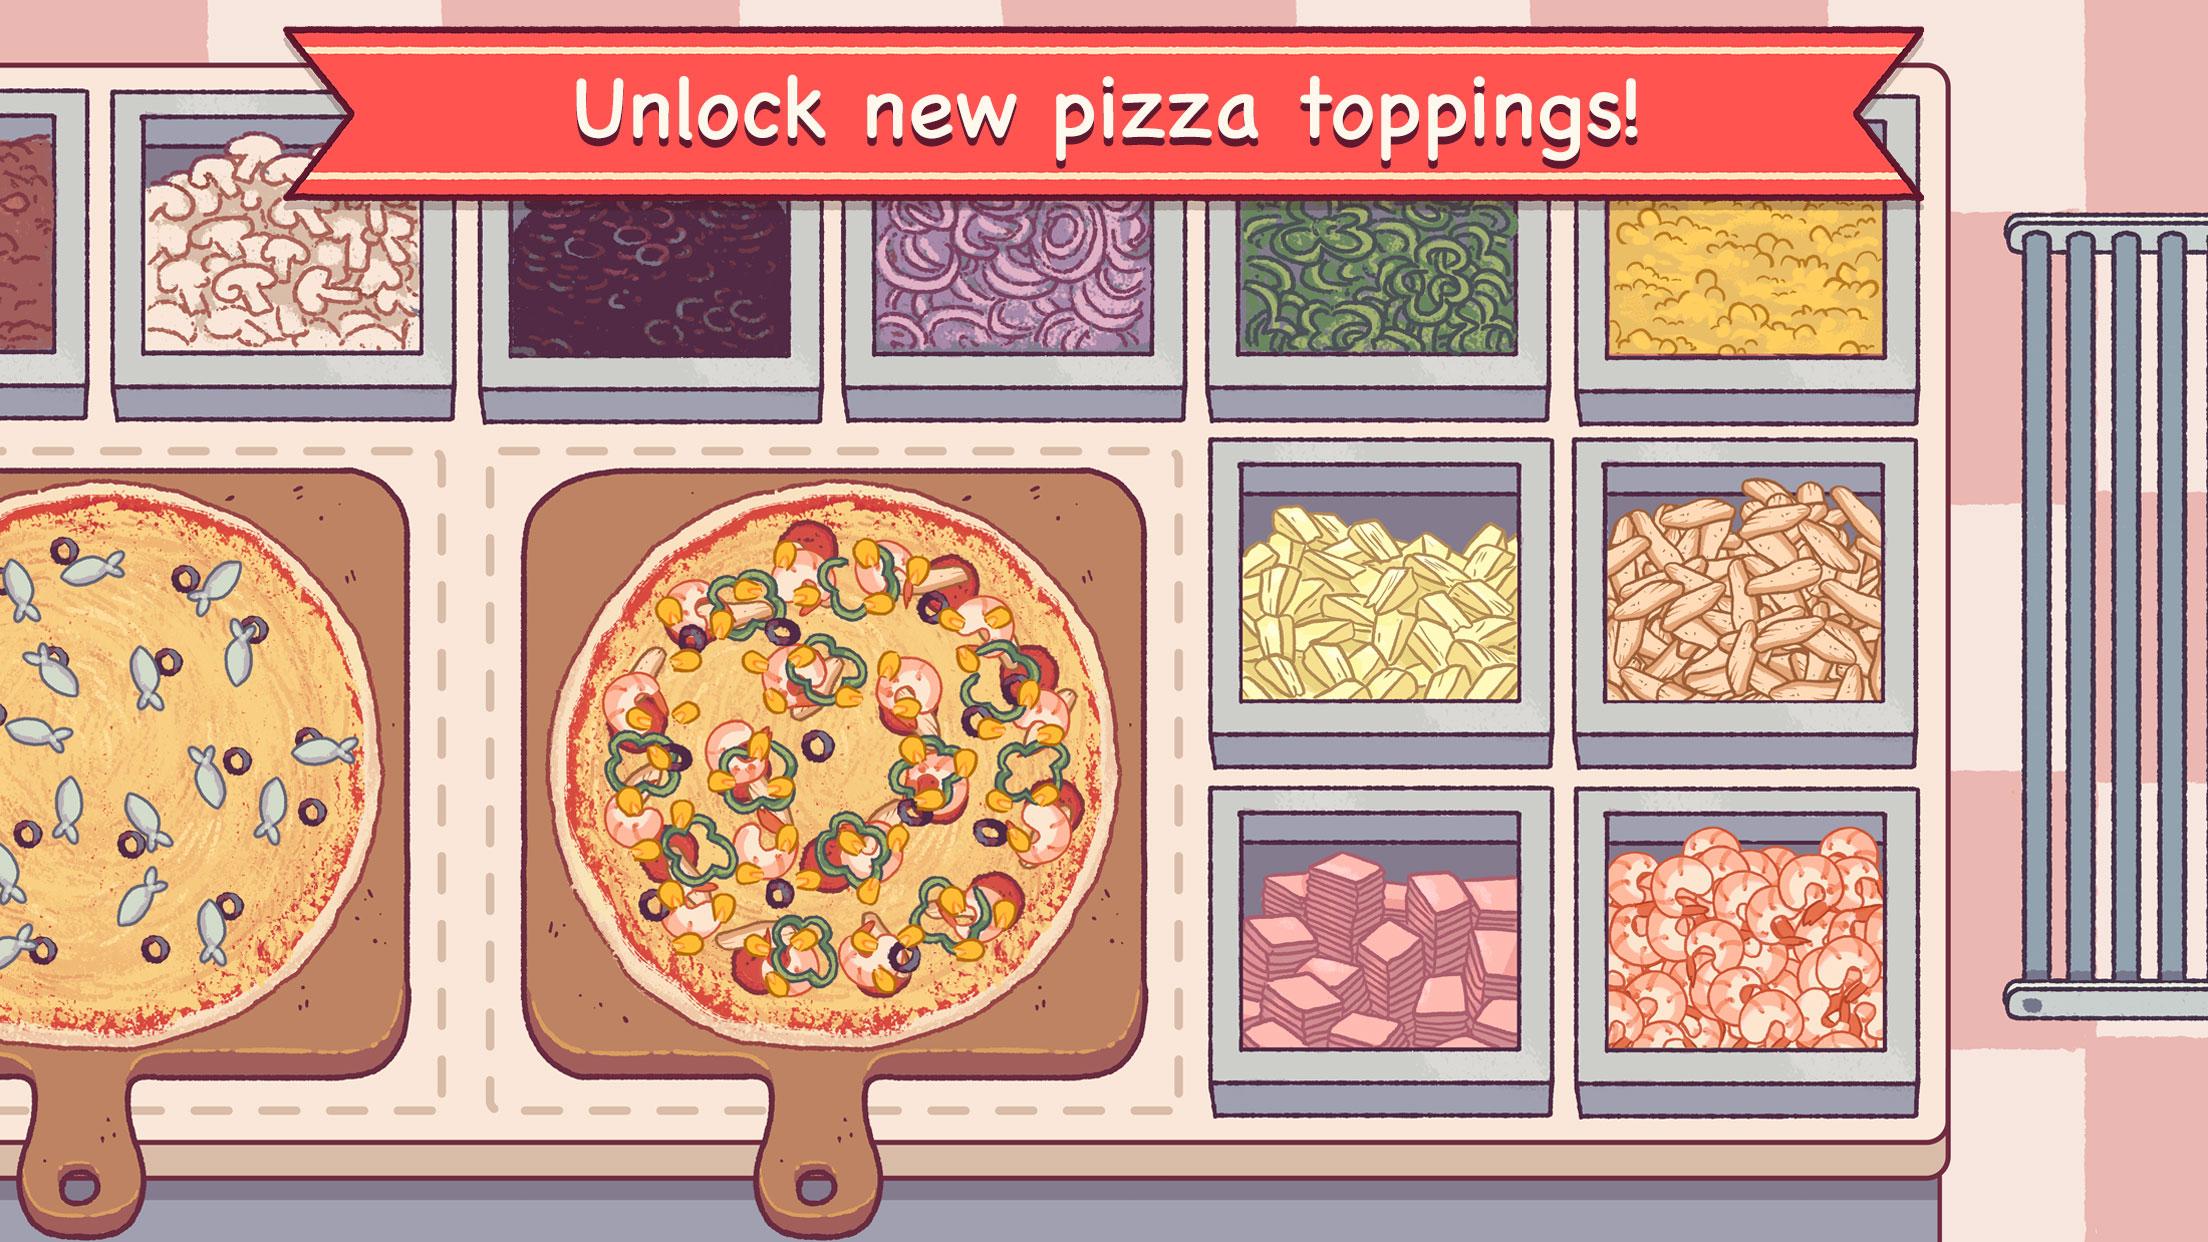 Игра пицца как пройти уровень